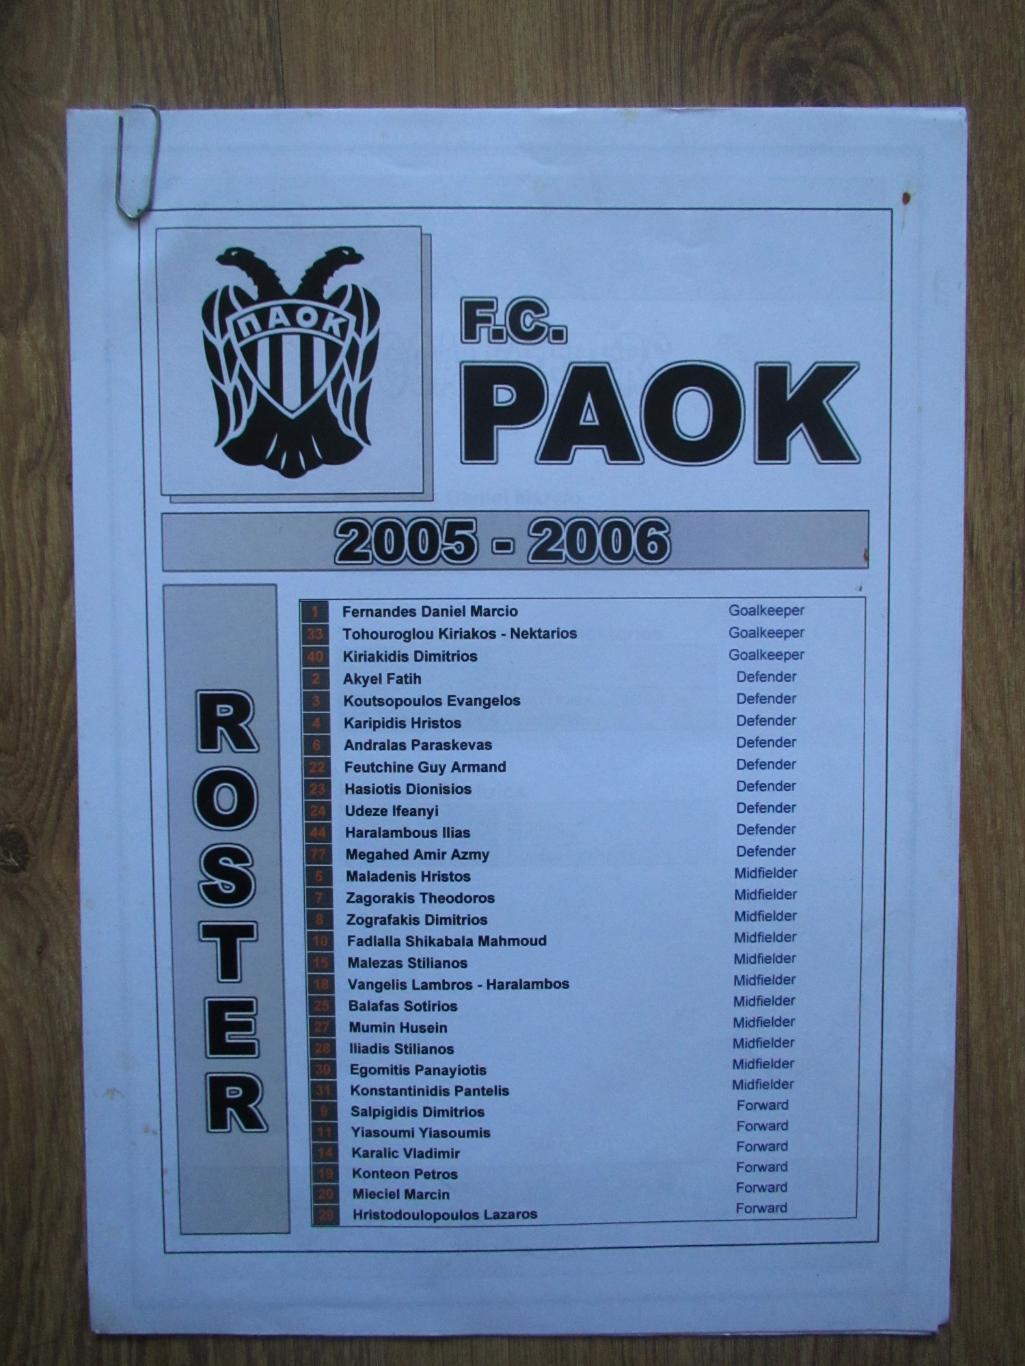 ФК ПАОК Салоники состав команды сезон 2005/2006 (фото игроков нет)